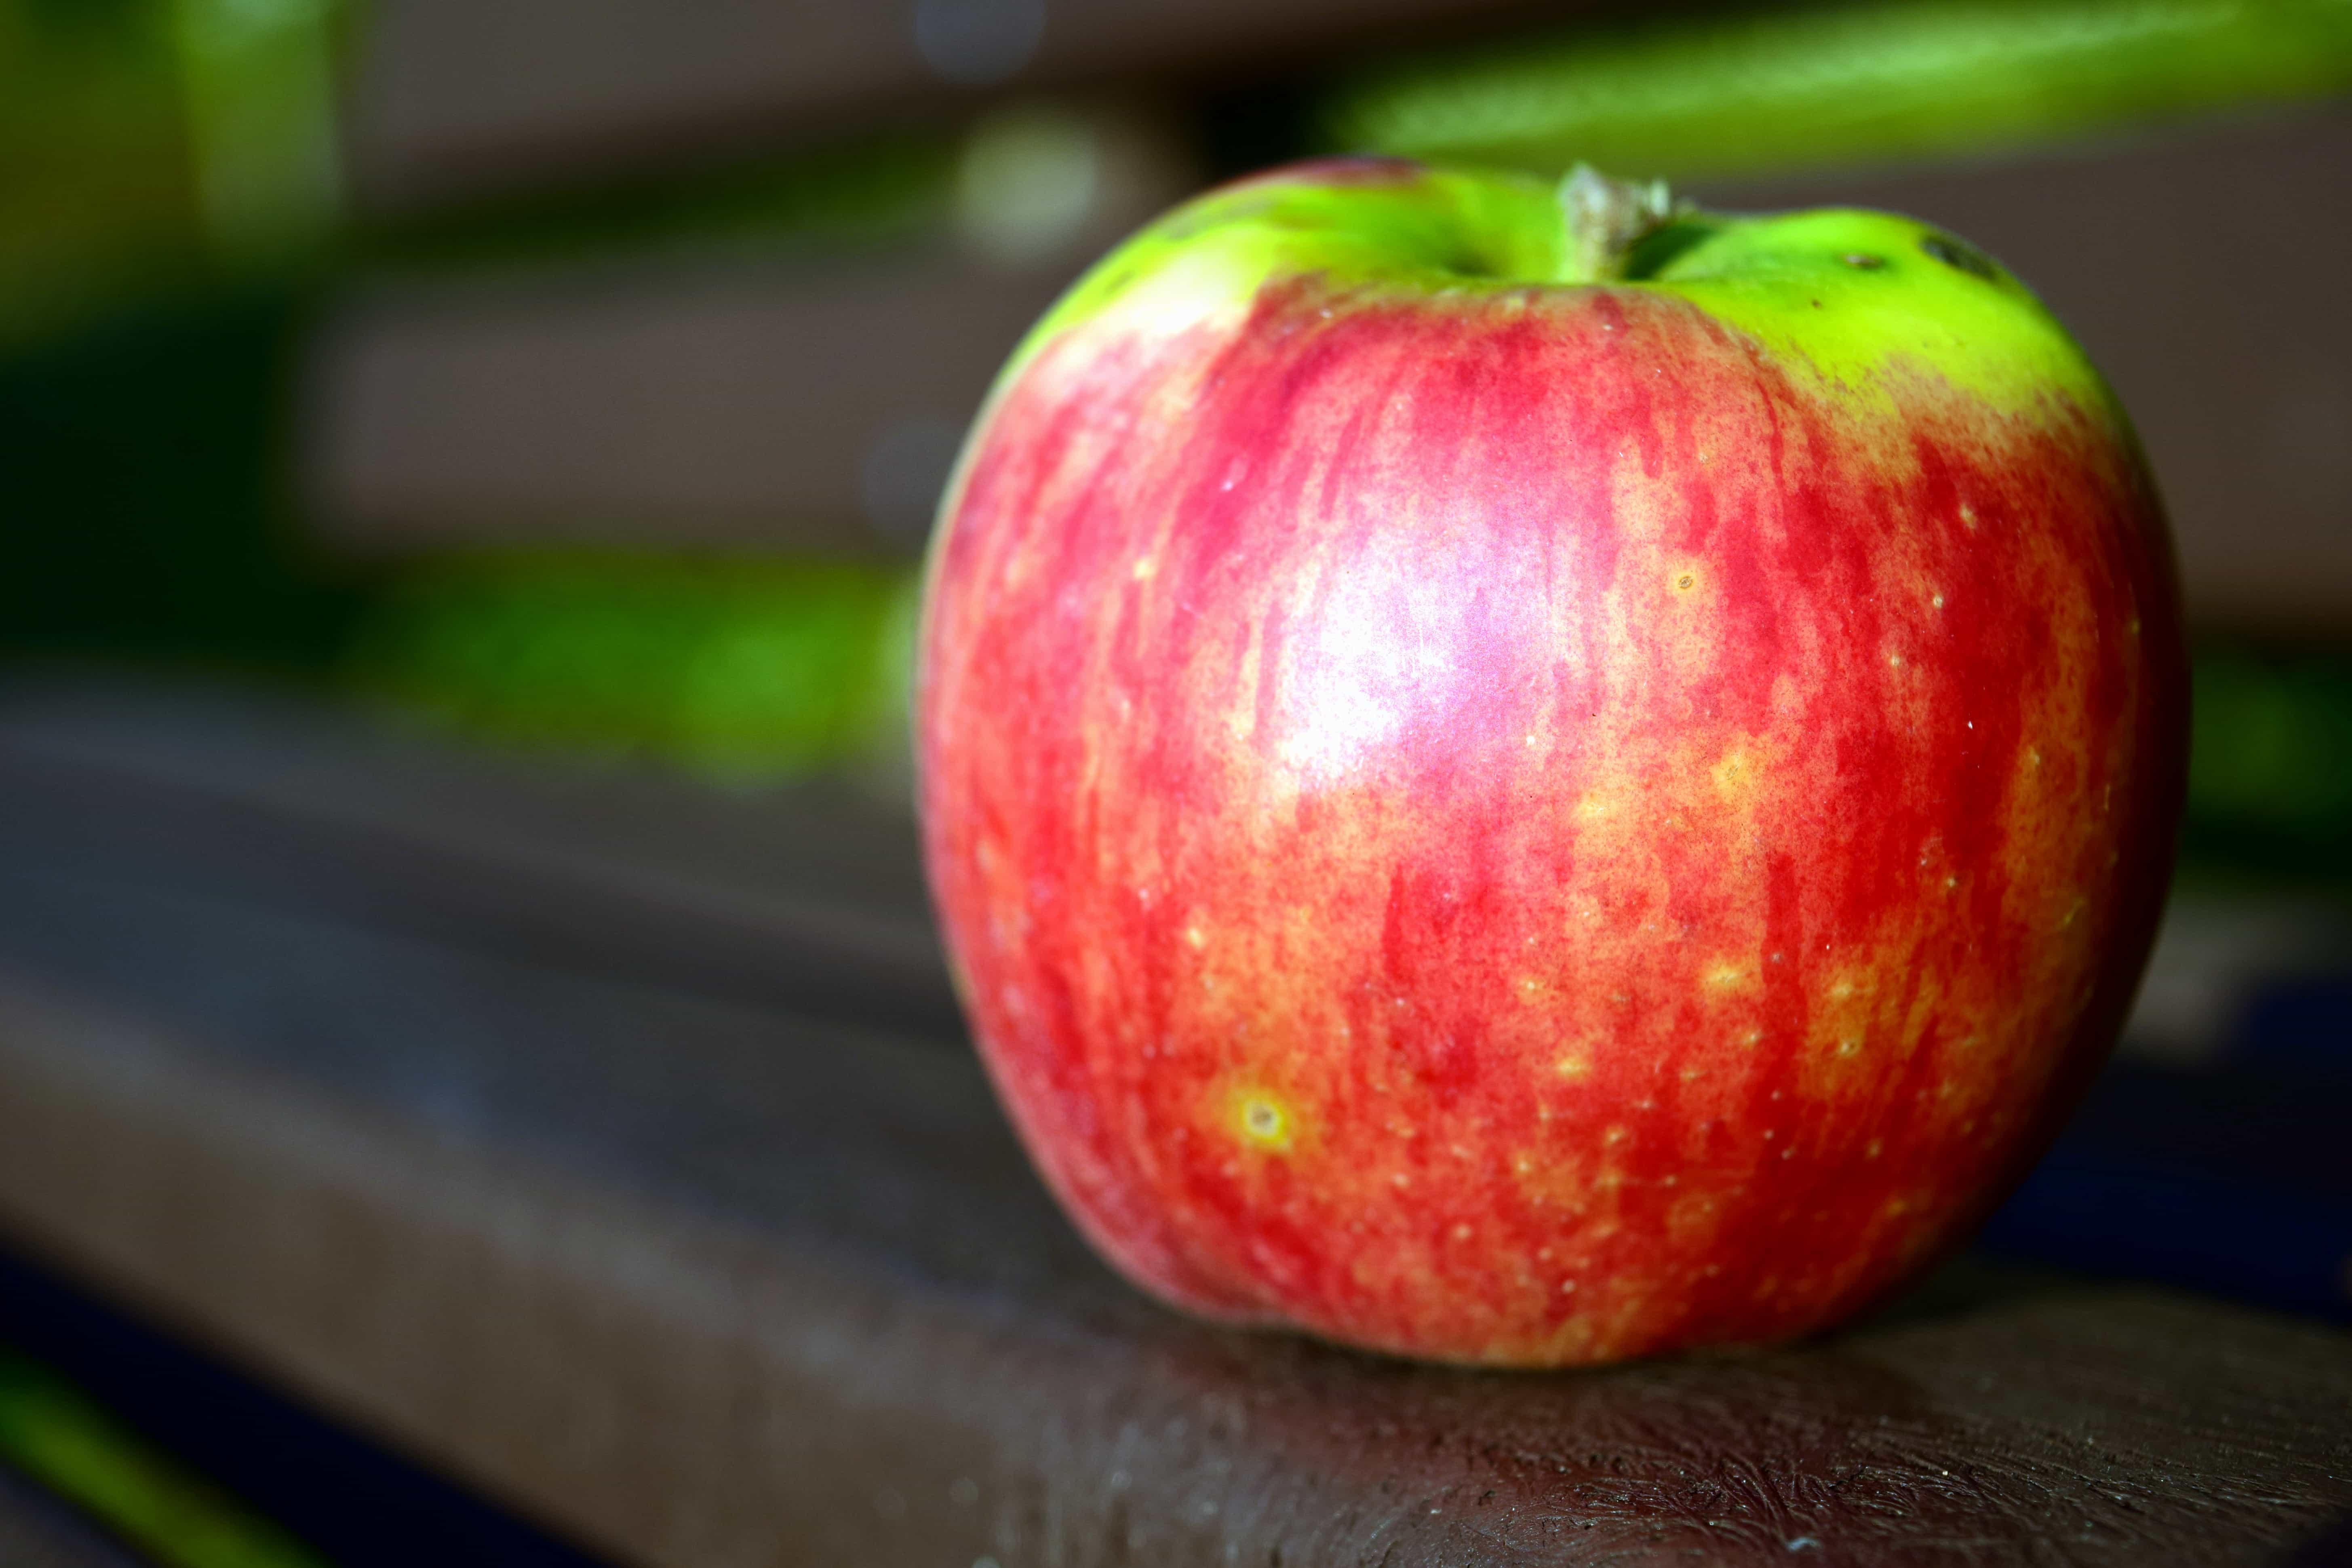 Kostenlose Bild: Apfel, Obst, Essen, lecker, Vitamin, Diät, Ernährung